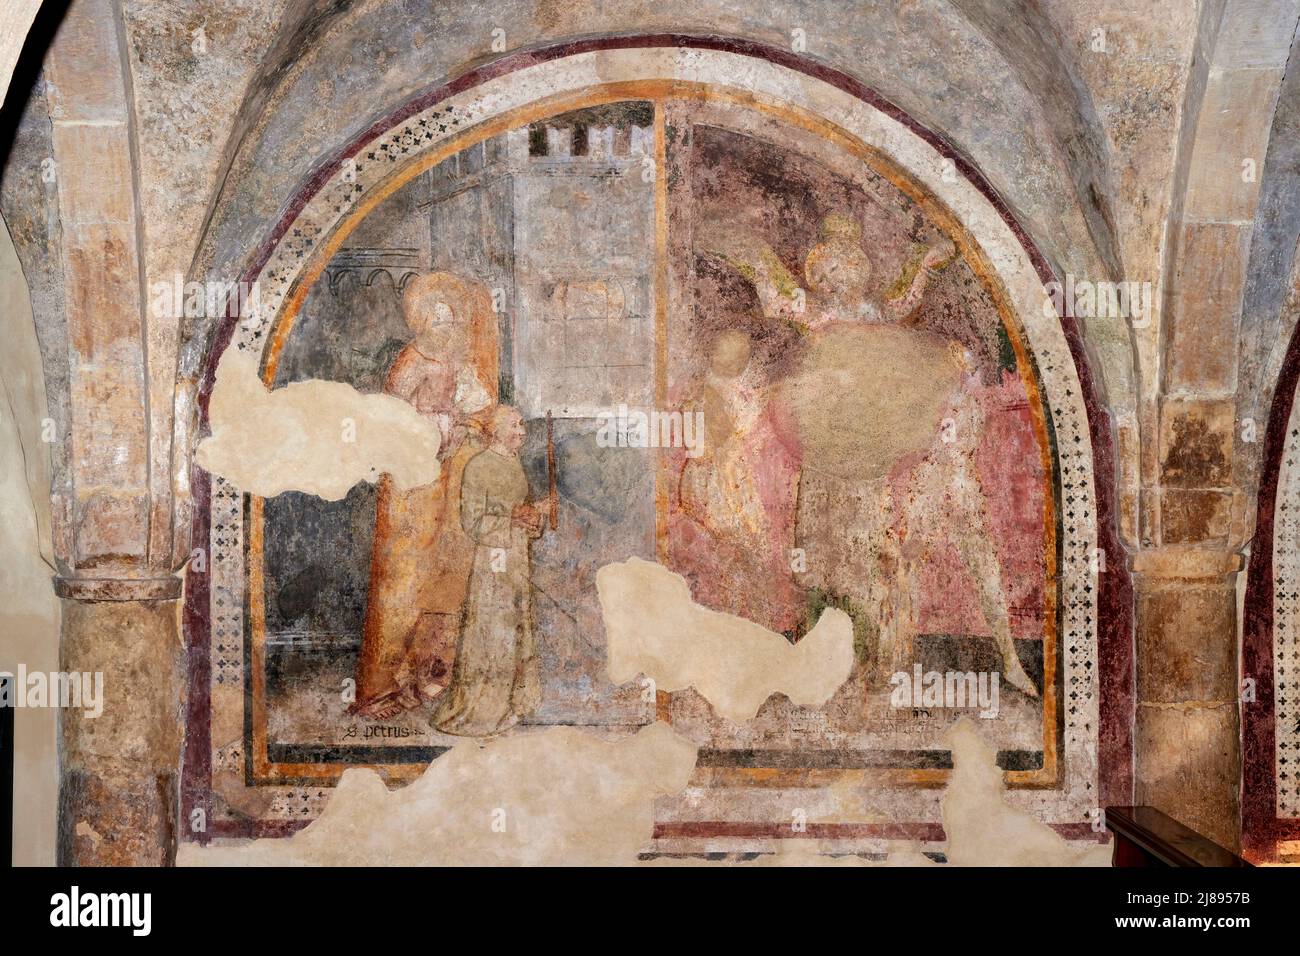 Agata - oaffresco - pittore veronese del XIV secolo - San Bonifacio (VR),italia, abbazia di San Pietro Foto Stock